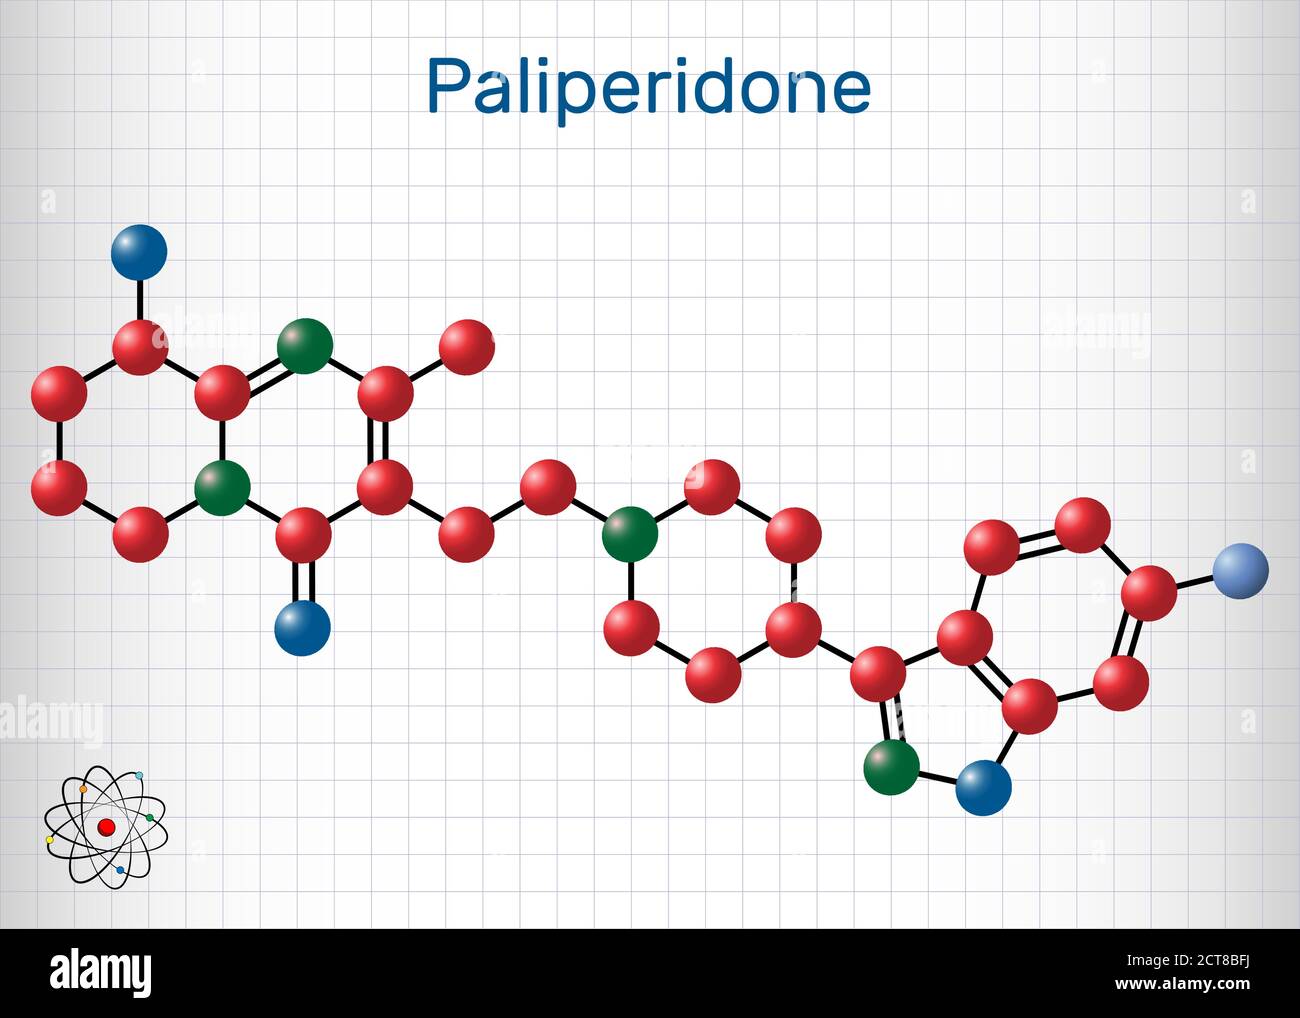 Paliperidon, 9-Hydroxyrisperidon-Molekül. Es ist ein atypischer antipsychotischer Wirkstoff, der bei der Behandlung von Schizophrenie verwendet wird. Blatt Papier in einer ca. Stock Vektor